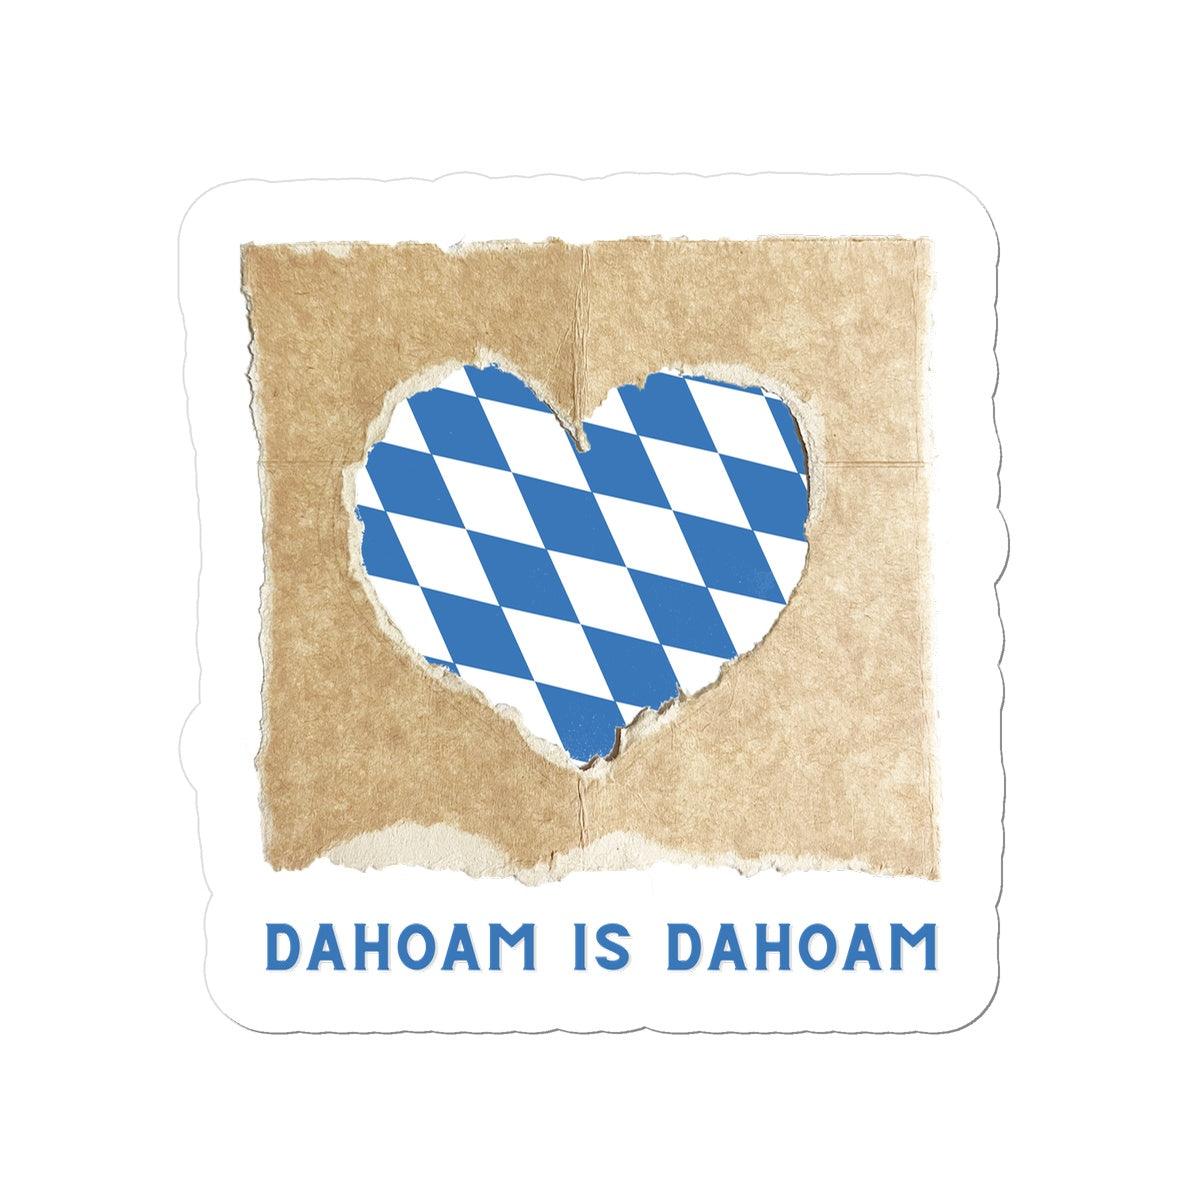 Bavarian Statement Sticker "Dahoam is Dahoam", Blue & White Heart Print, vinyl, 4 sizes - Bavari Shop - Bavarian Outfits, Dirndl, Lederhosen & Accessories